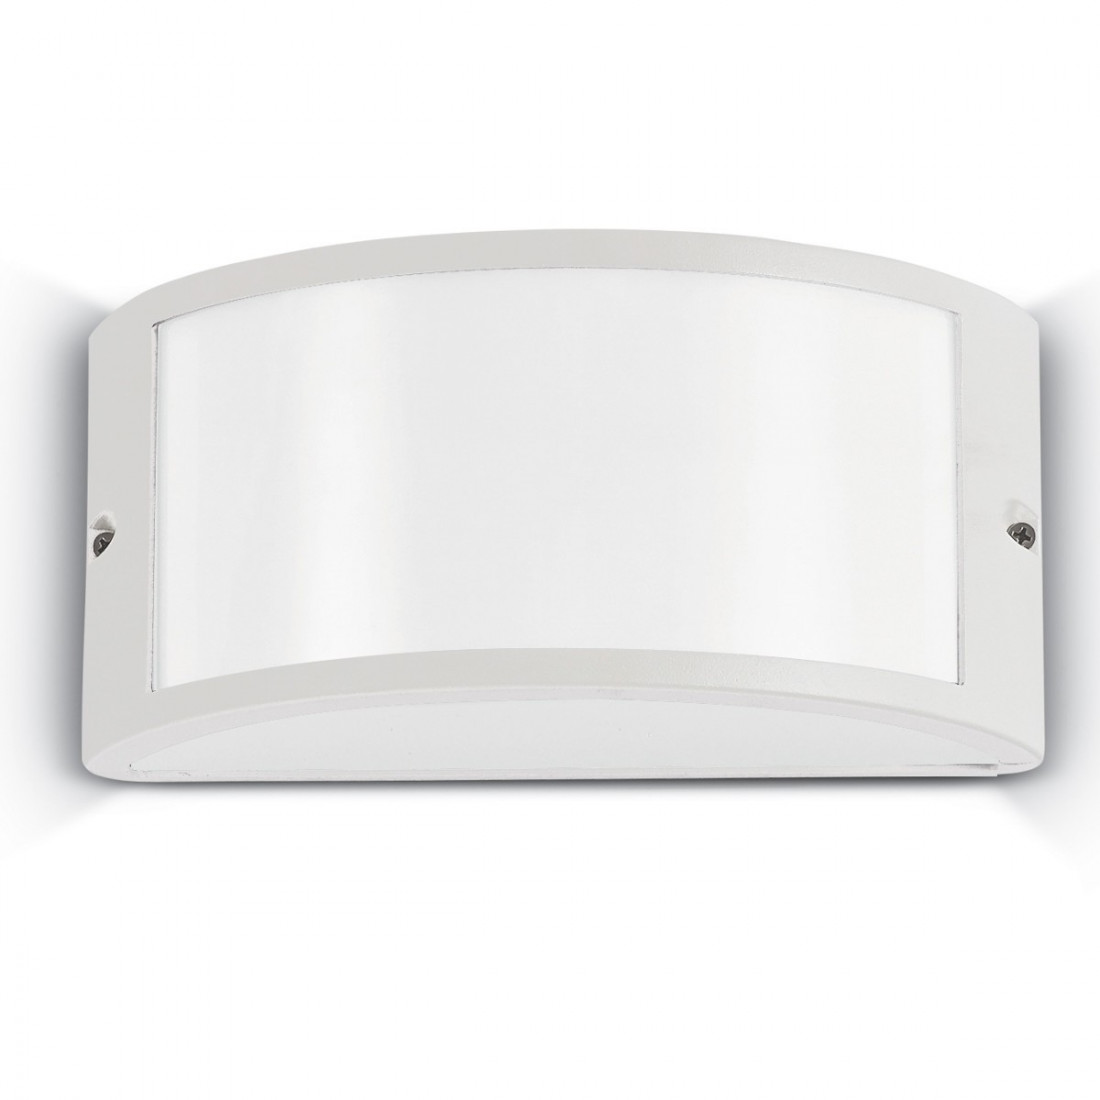 Applique ID-REX 1 AP1 E27 LED IP44 alluminio antracite bianco acrilico lampada parete moderna fascia esterno